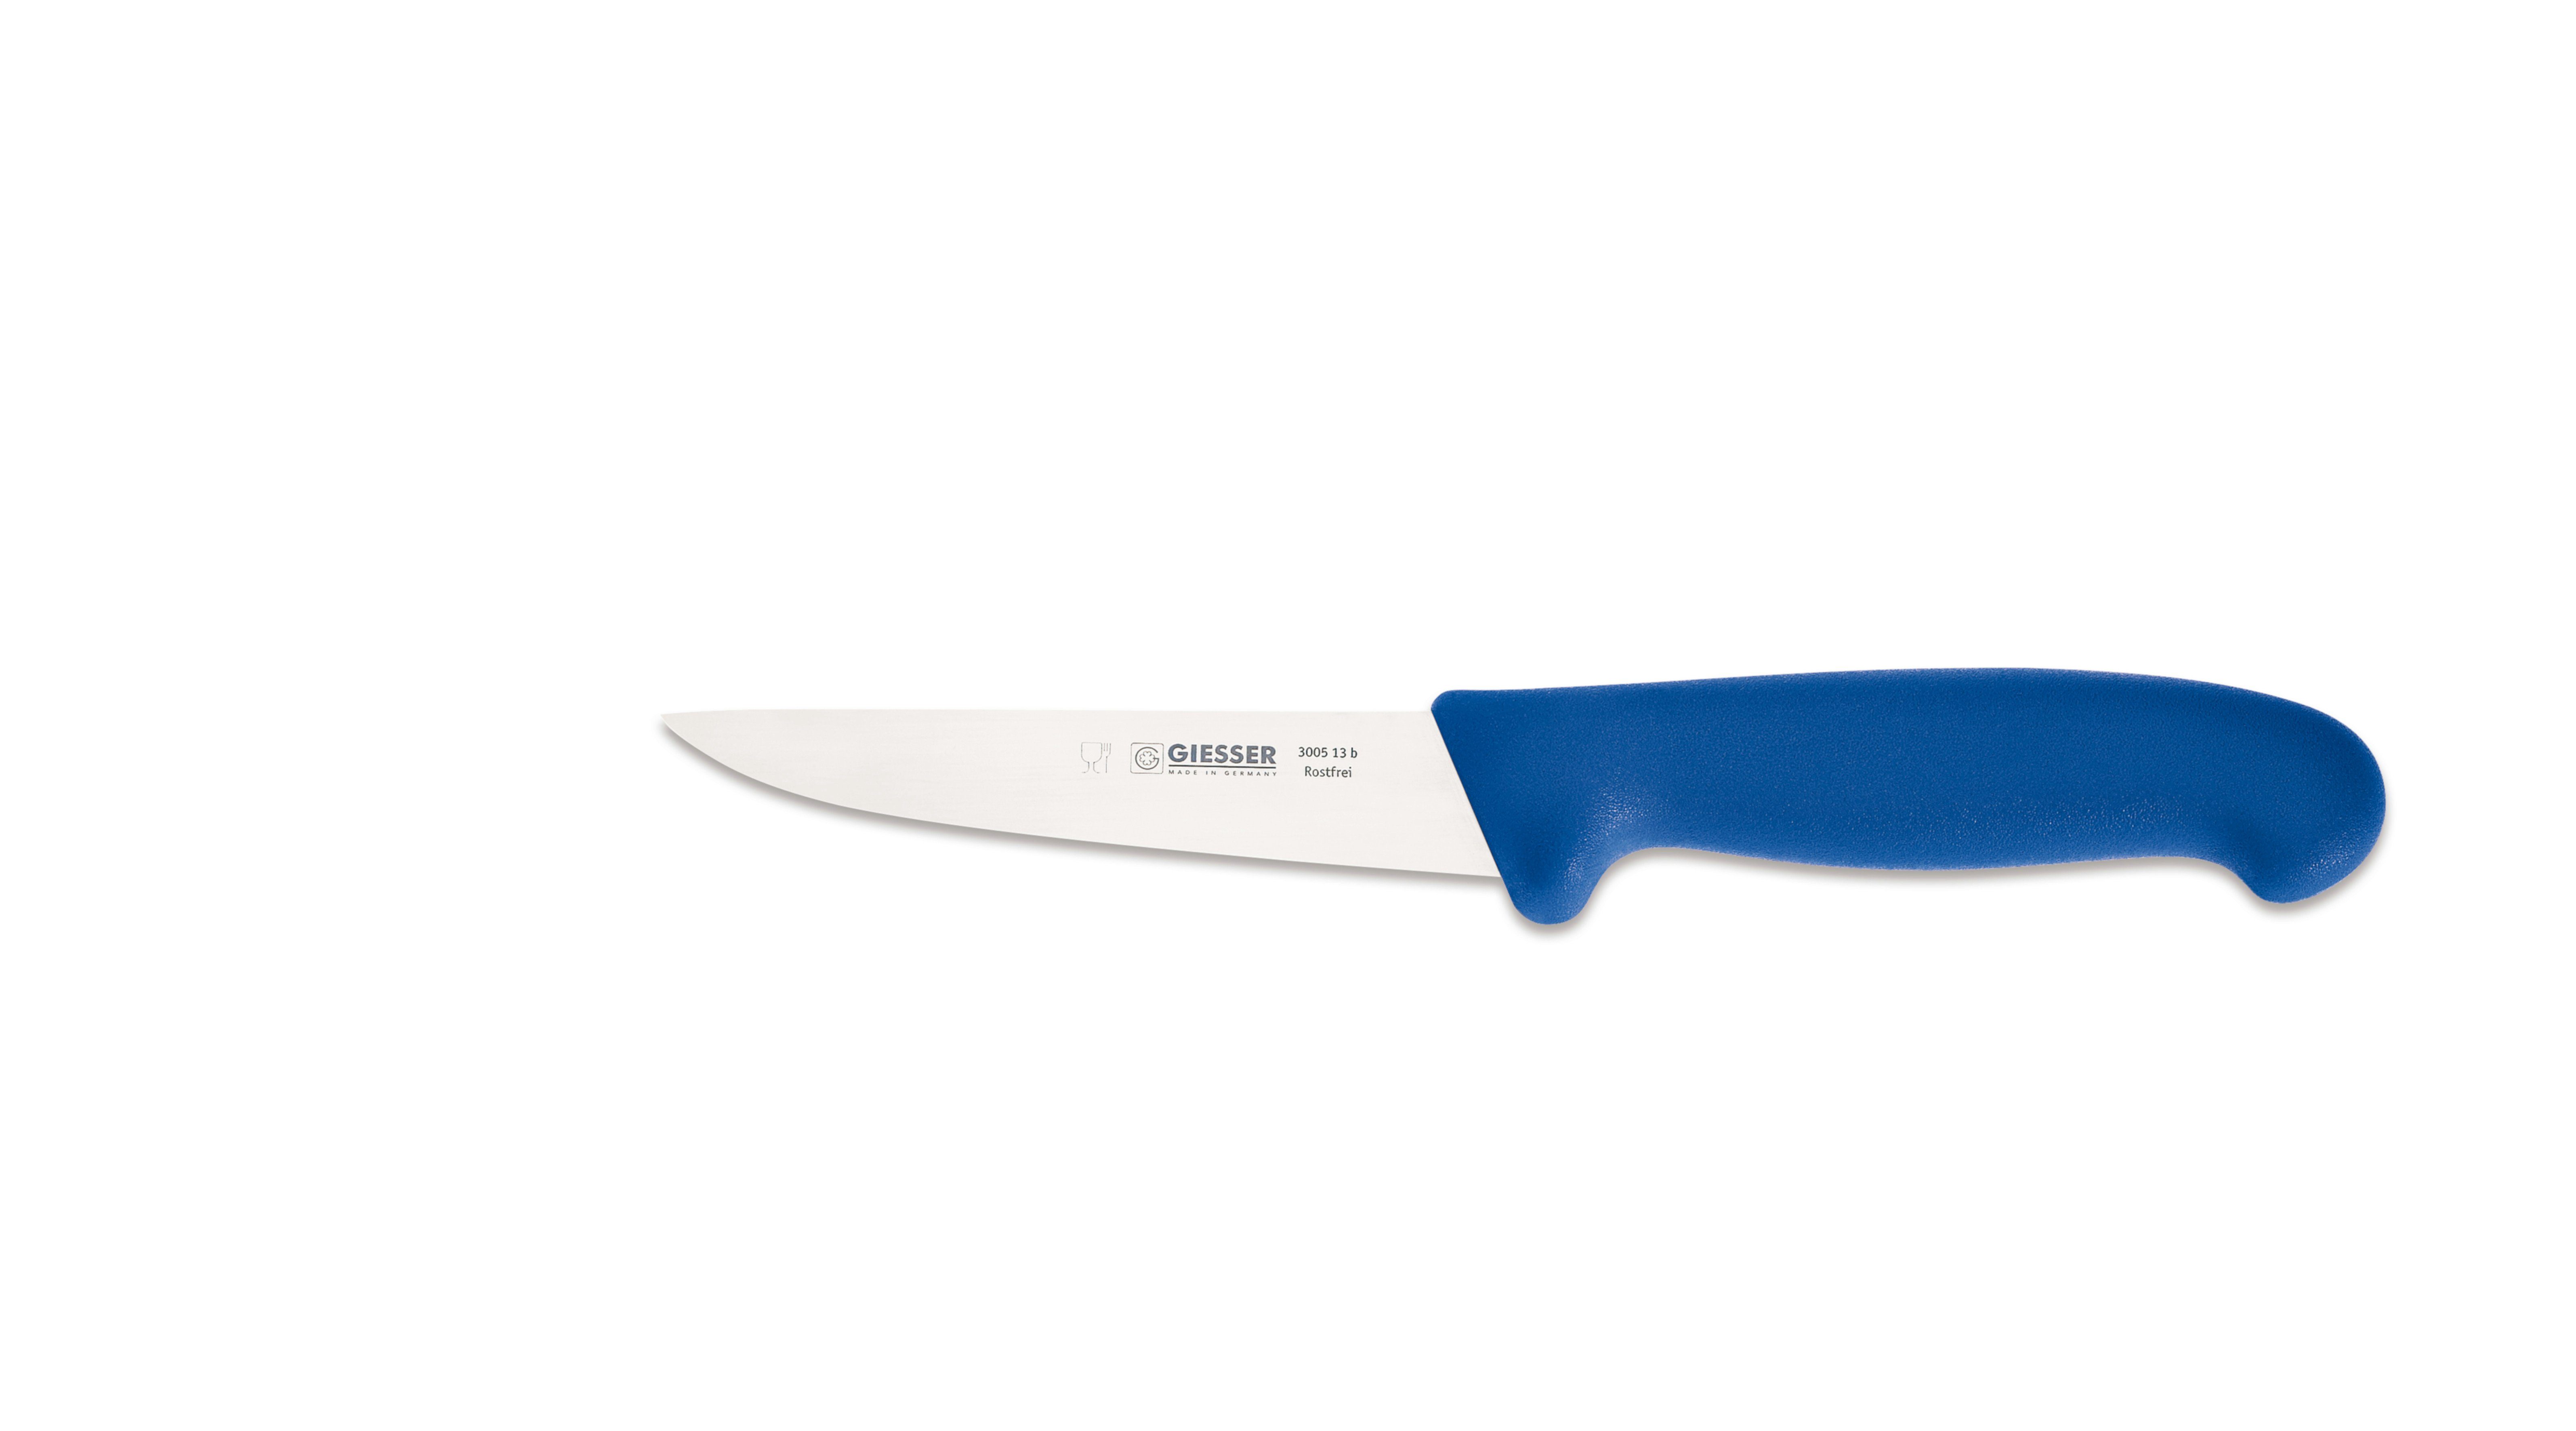 Giesser Messer Ausbeinmesser Stechmesser 3005 13-30, starke, gerade Klinge, Ideal für Fleischer Blau